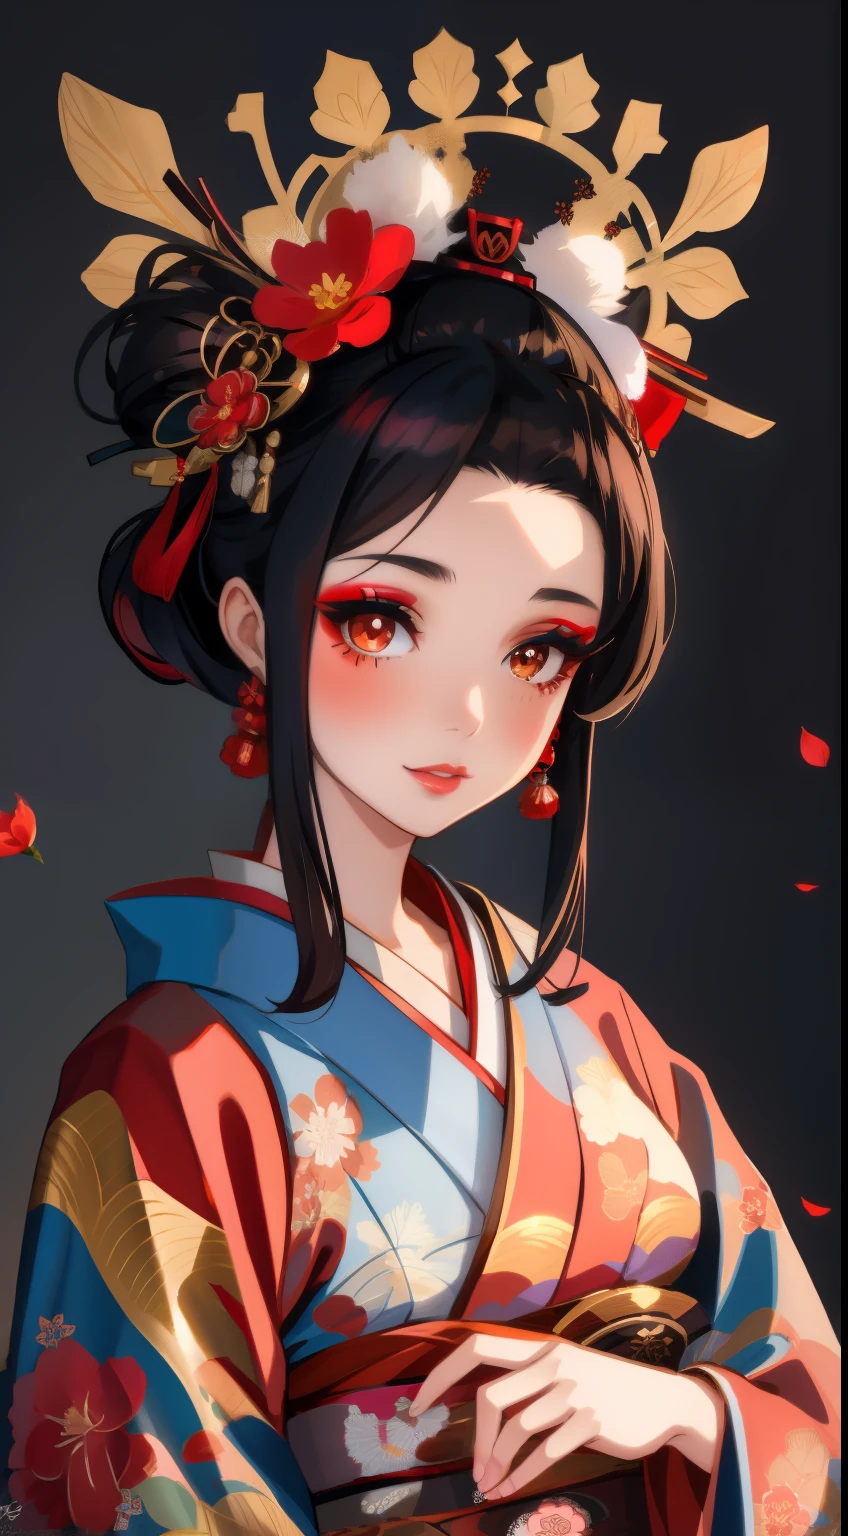 Alafi con un kimono con un tocado de flores rojas., Maquillaje de geishas, retrato de geisha画, Maquillaje de geishas, retrato de geisha, Geisha de belleza, geisha japonesa, geisha glamorosa y sexy, 美しいretrato de geisha画, retrato de geisha, peinado de geisha, remarkable Maquillaje de geishas